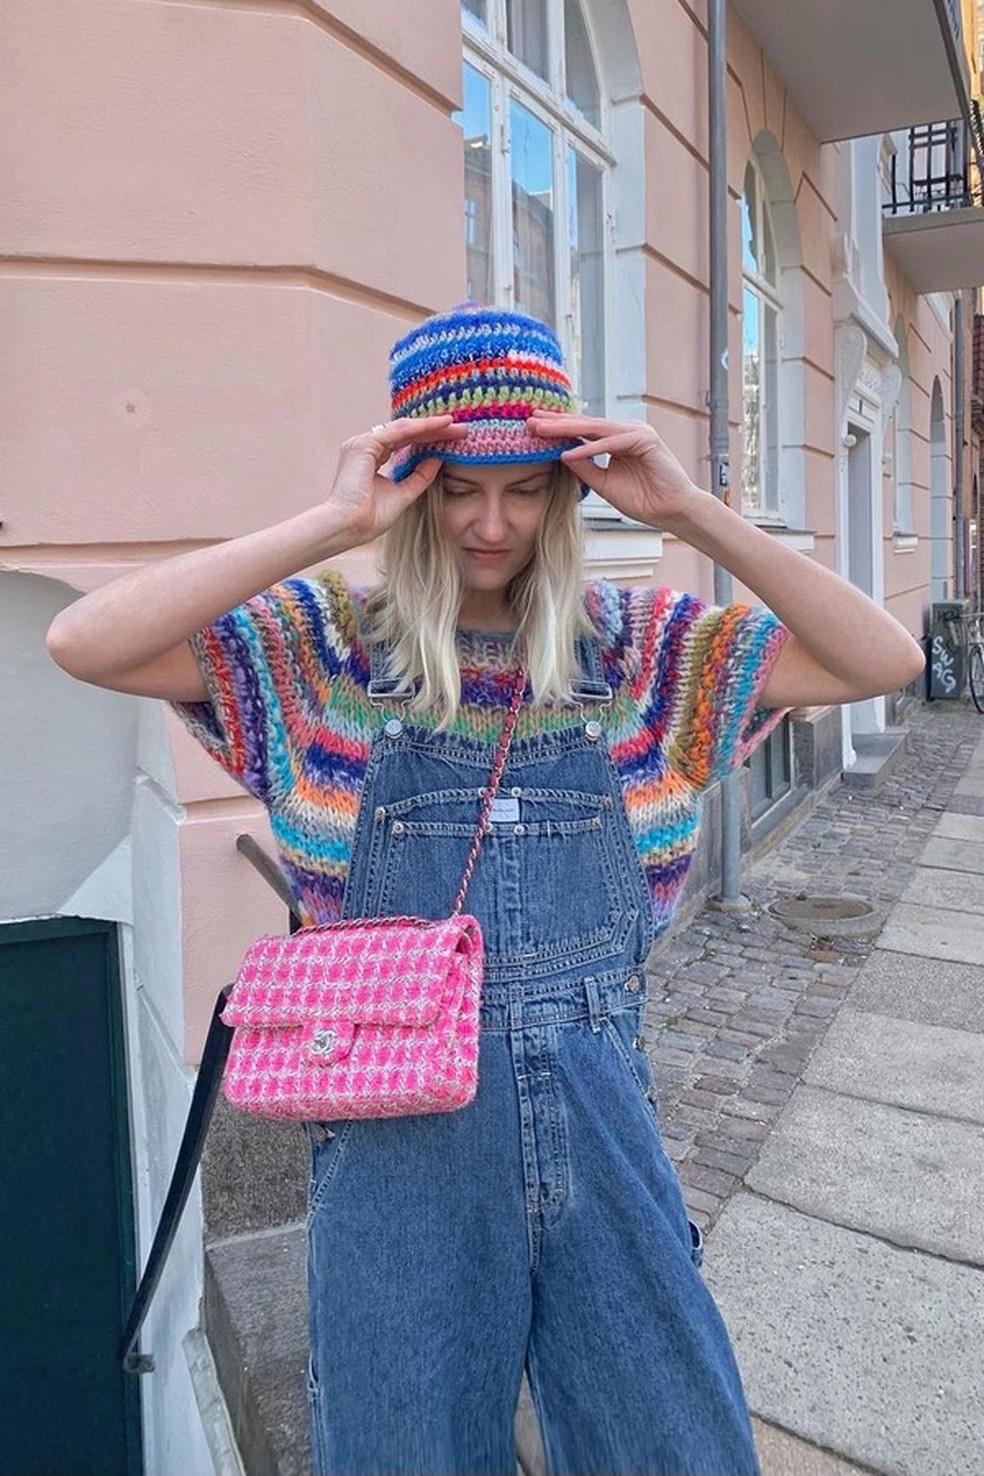 Chapéu de crochê é a tendência estilosa da vez (Foto: @annejohannsen) — Foto: Glamour